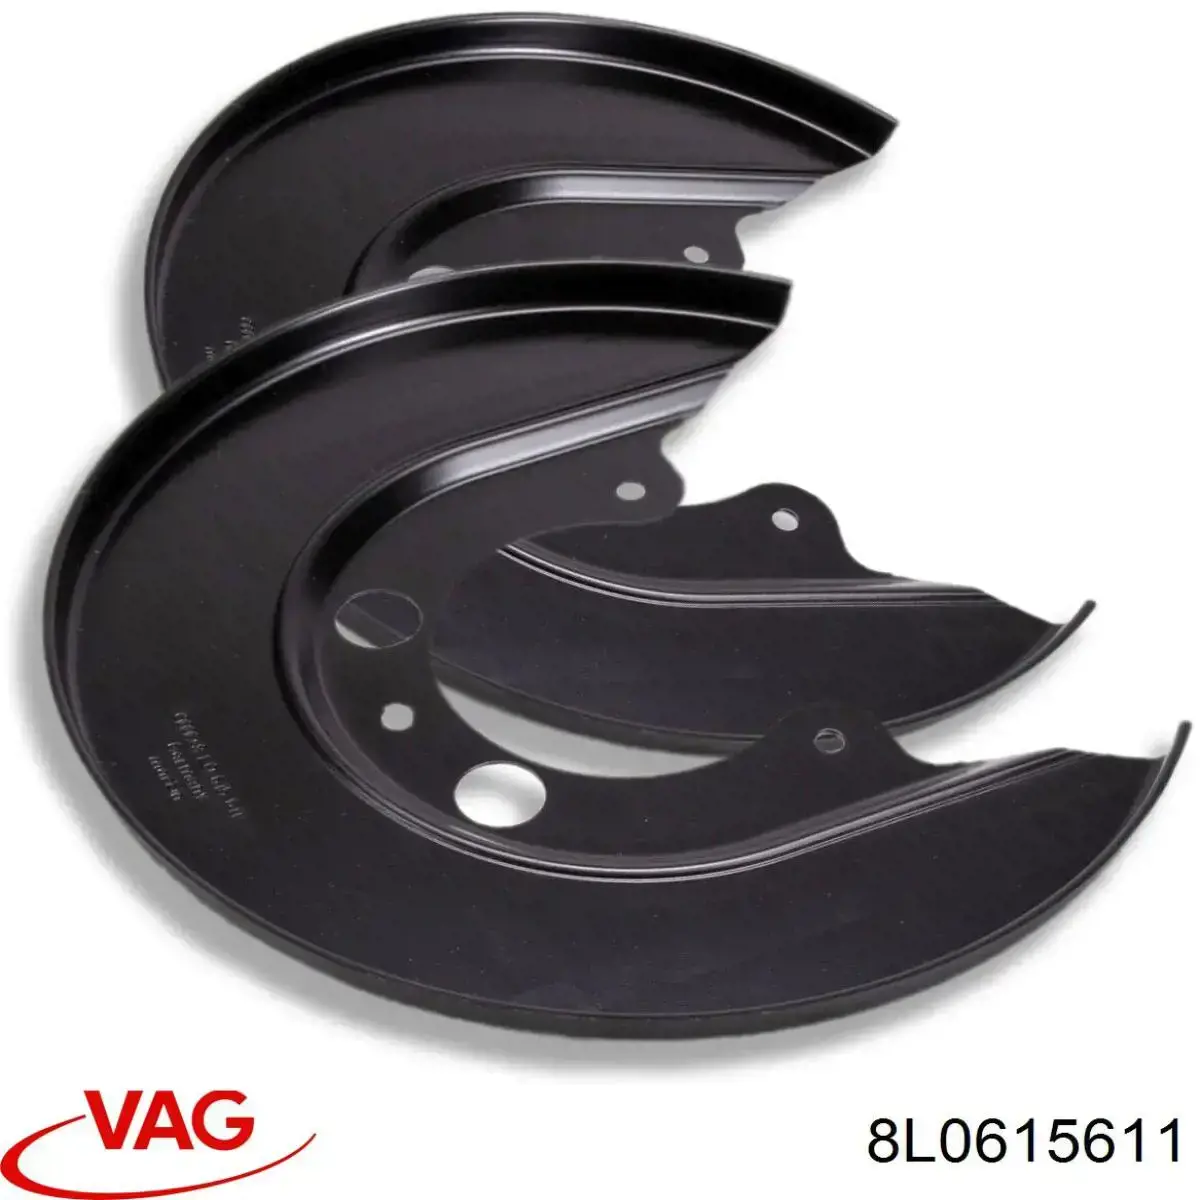 8L0615611 VAG chapa protectora contra salpicaduras, disco de freno trasero